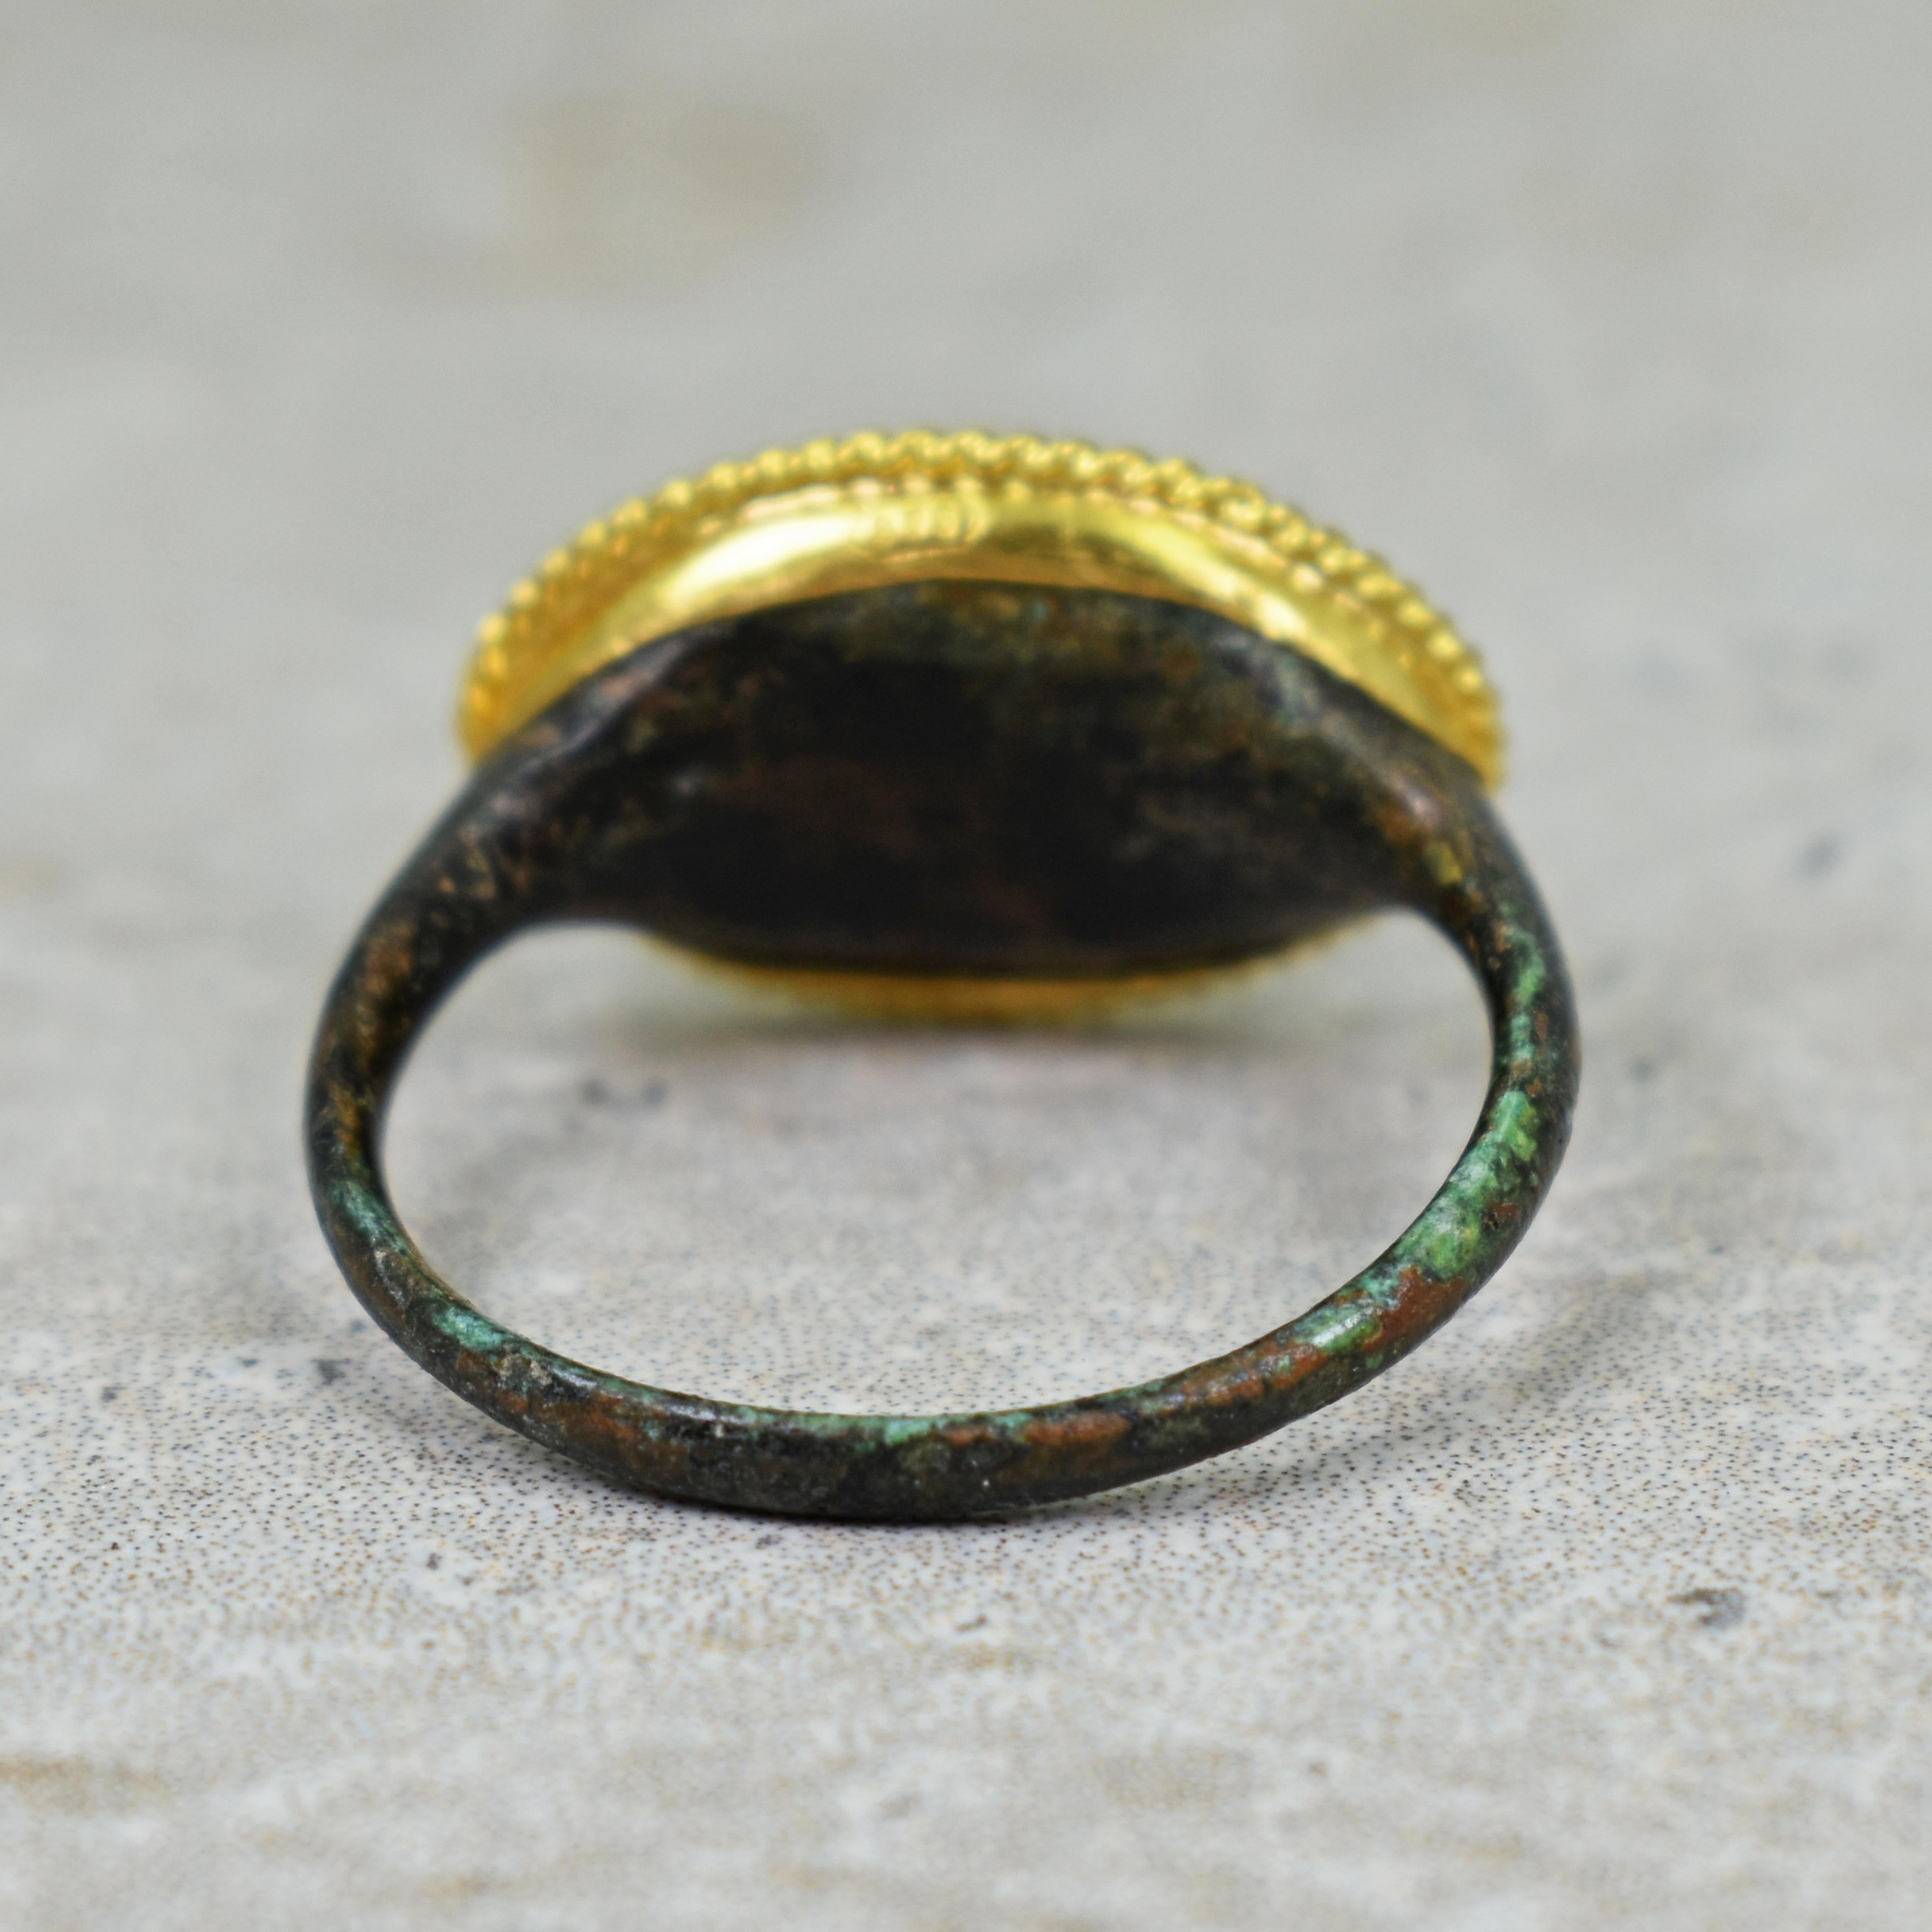 22 carat gold signet ring